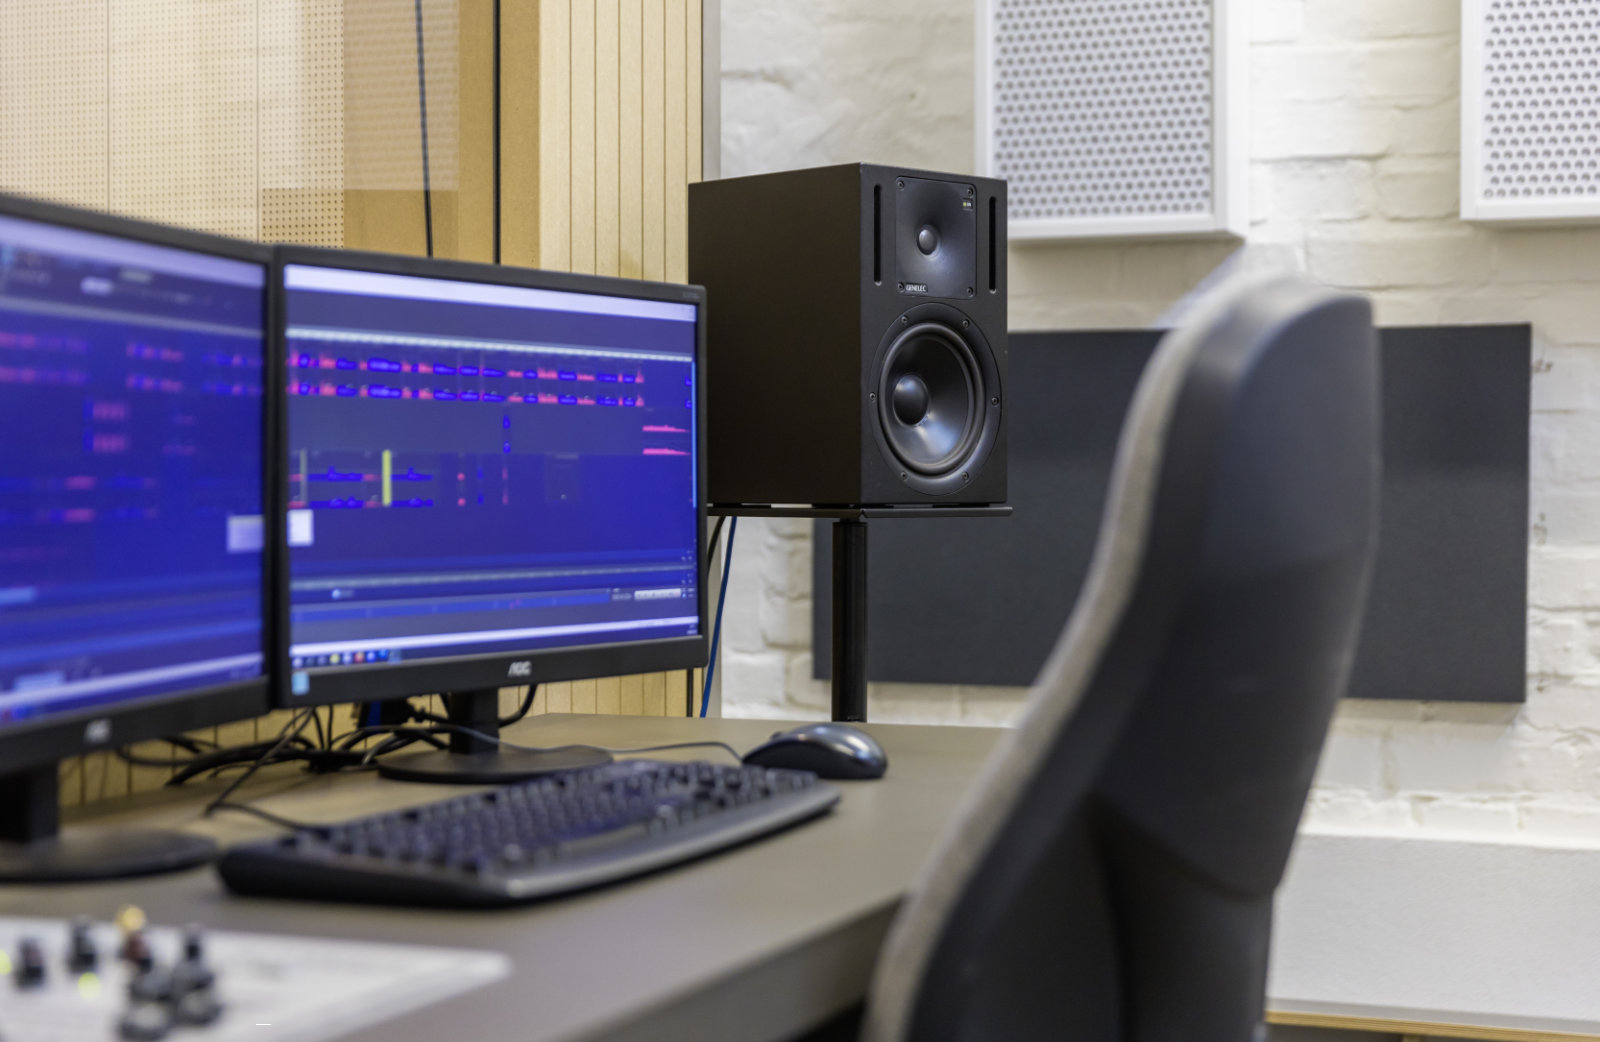 Foto: Zwei Monitore mit Audiobearbeitungssoftware, ein großer Lautsprecher und eine Tastatur auf dem Schreibtisch.